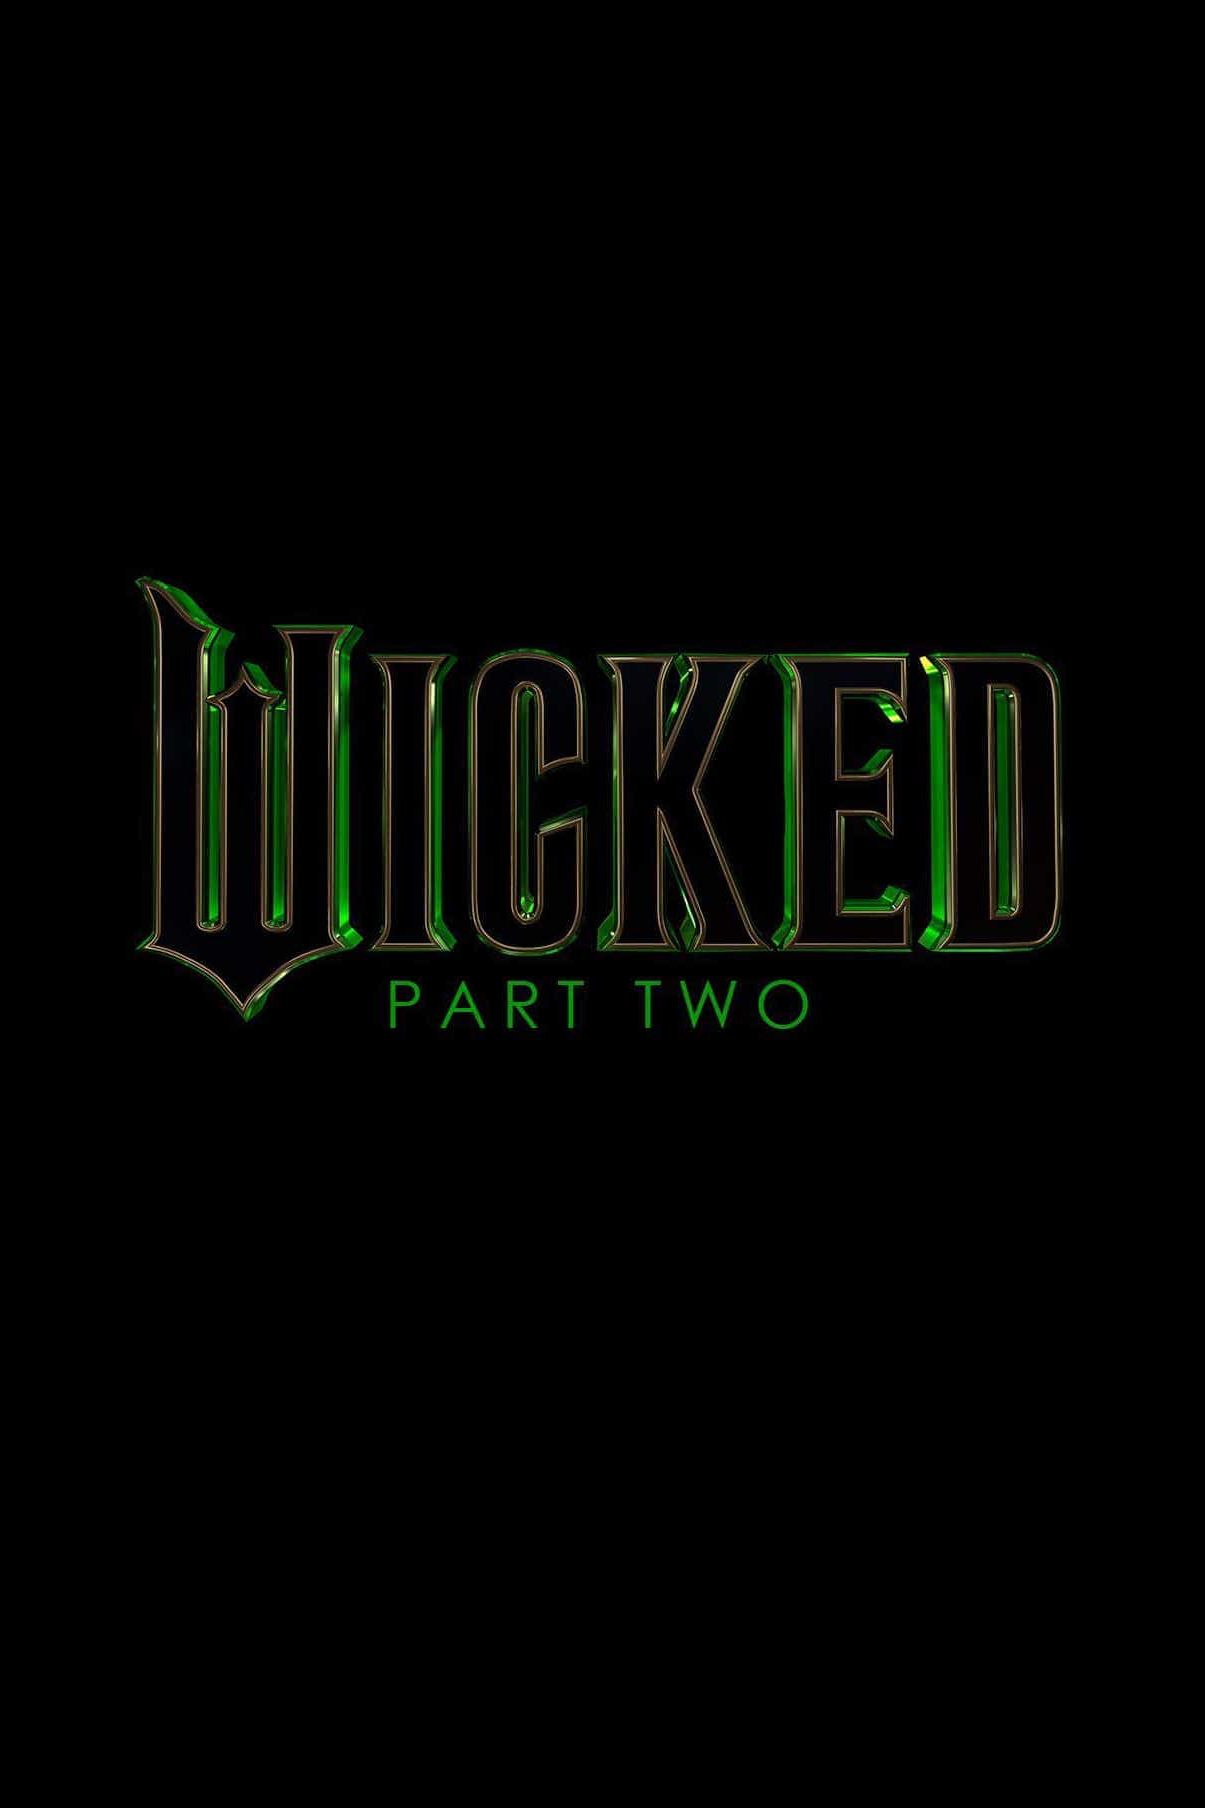 Pôster do logotipo do filme Wicked Parte Dois Temp